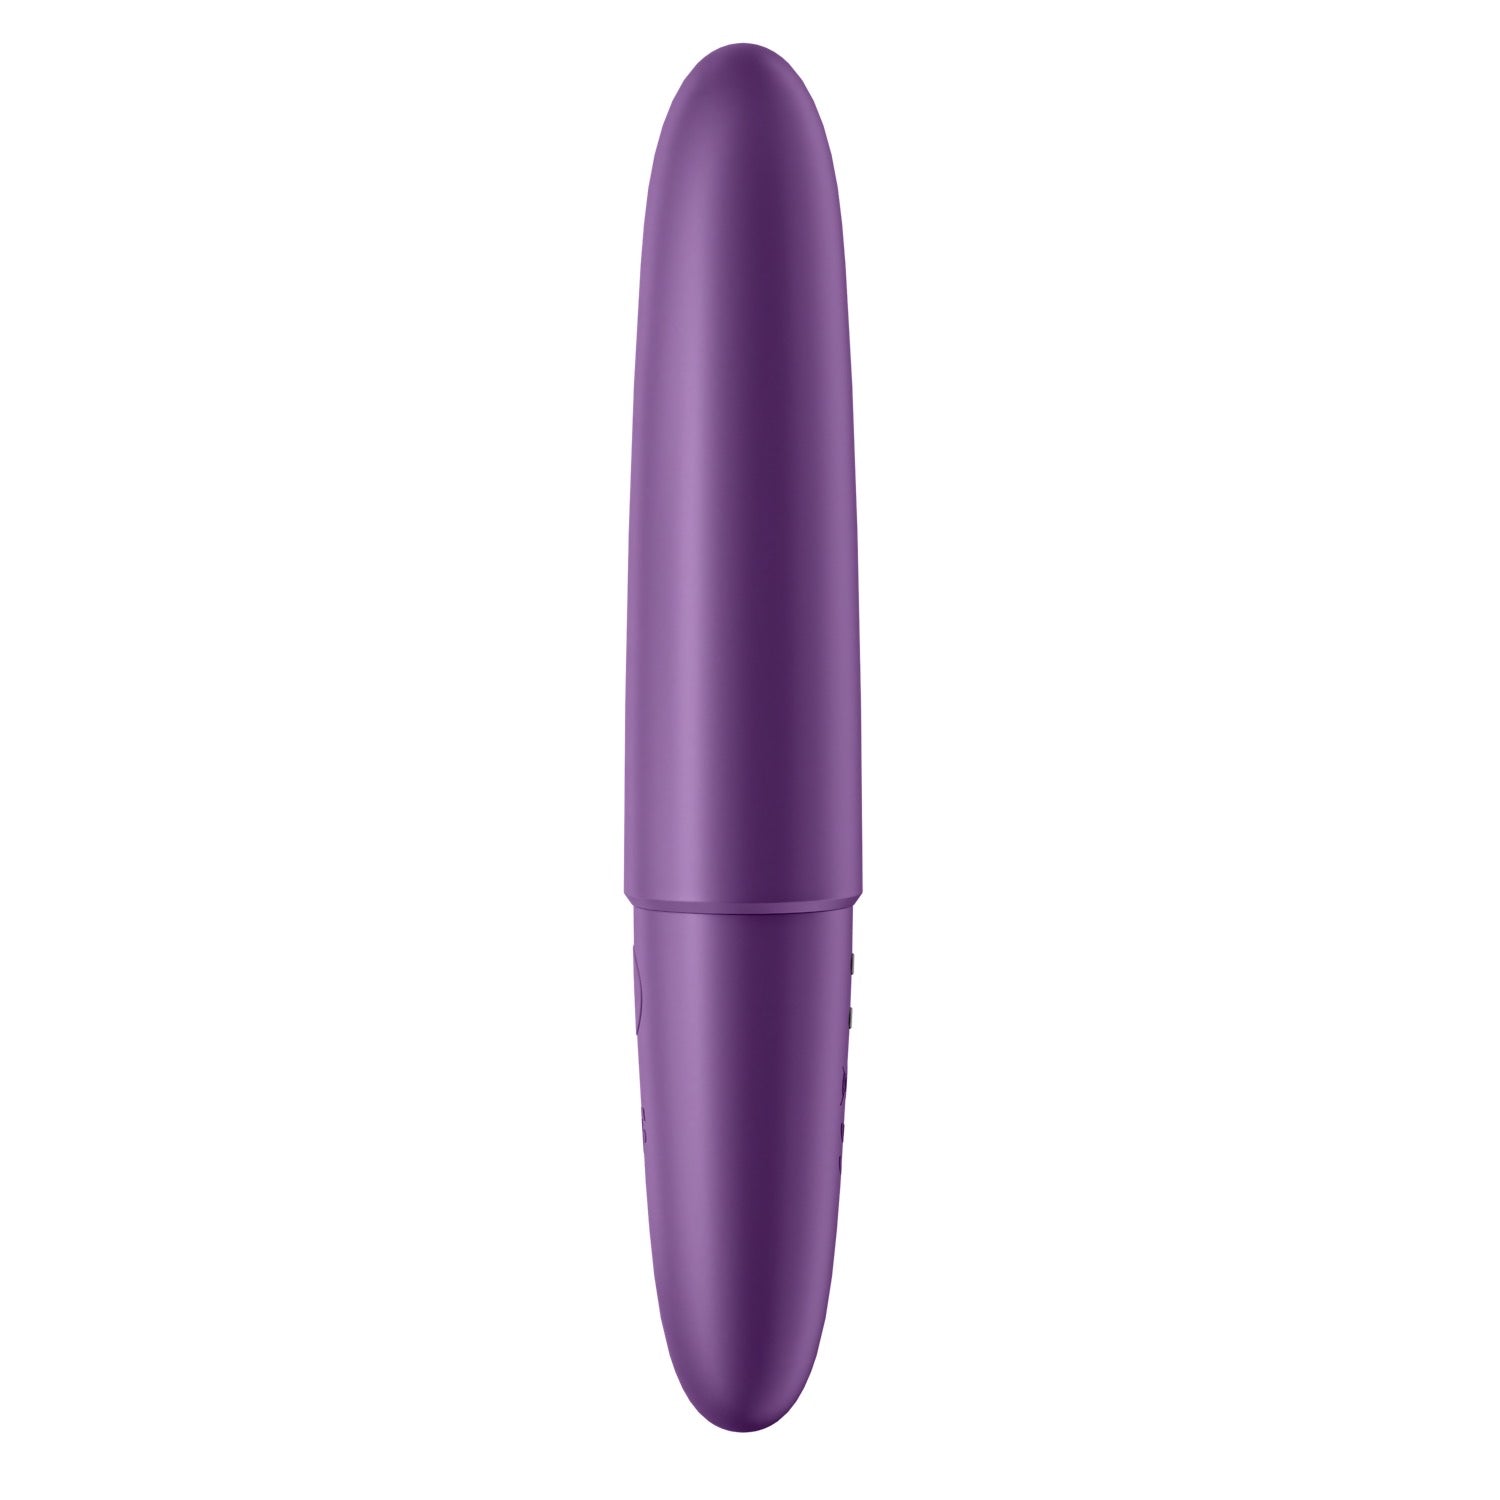 满意者 Ultra Power Bullet 6 - 紫色 by Satisfyer